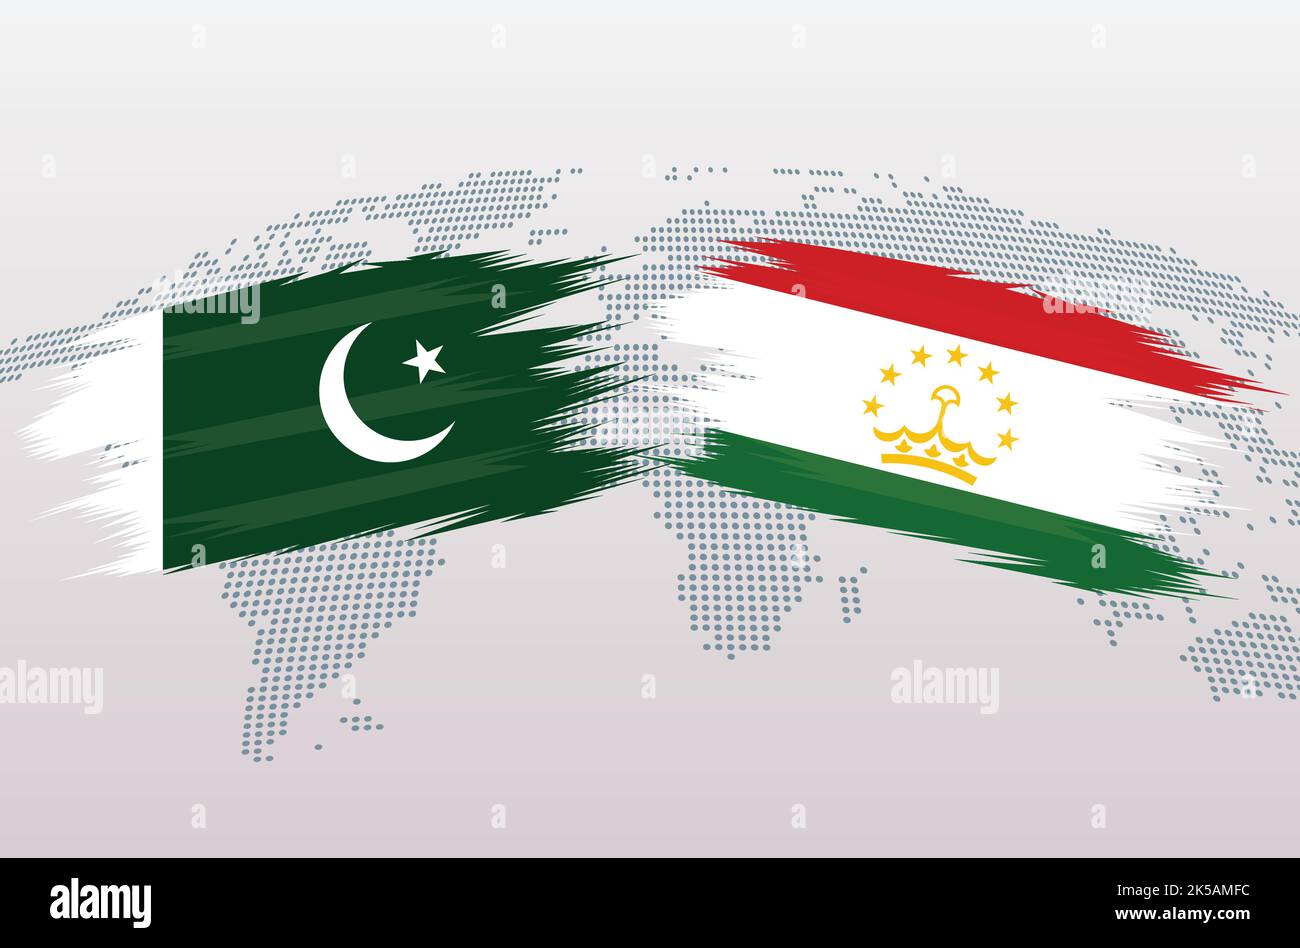 Bandiere Pakistan vs Tagikistan. Bandiere della Repubblica islamica del Pakistan contro il Tagikistan, isolate su sfondo grigio della mappa mondiale. Illustrazione vettoriale. Illustrazione Vettoriale